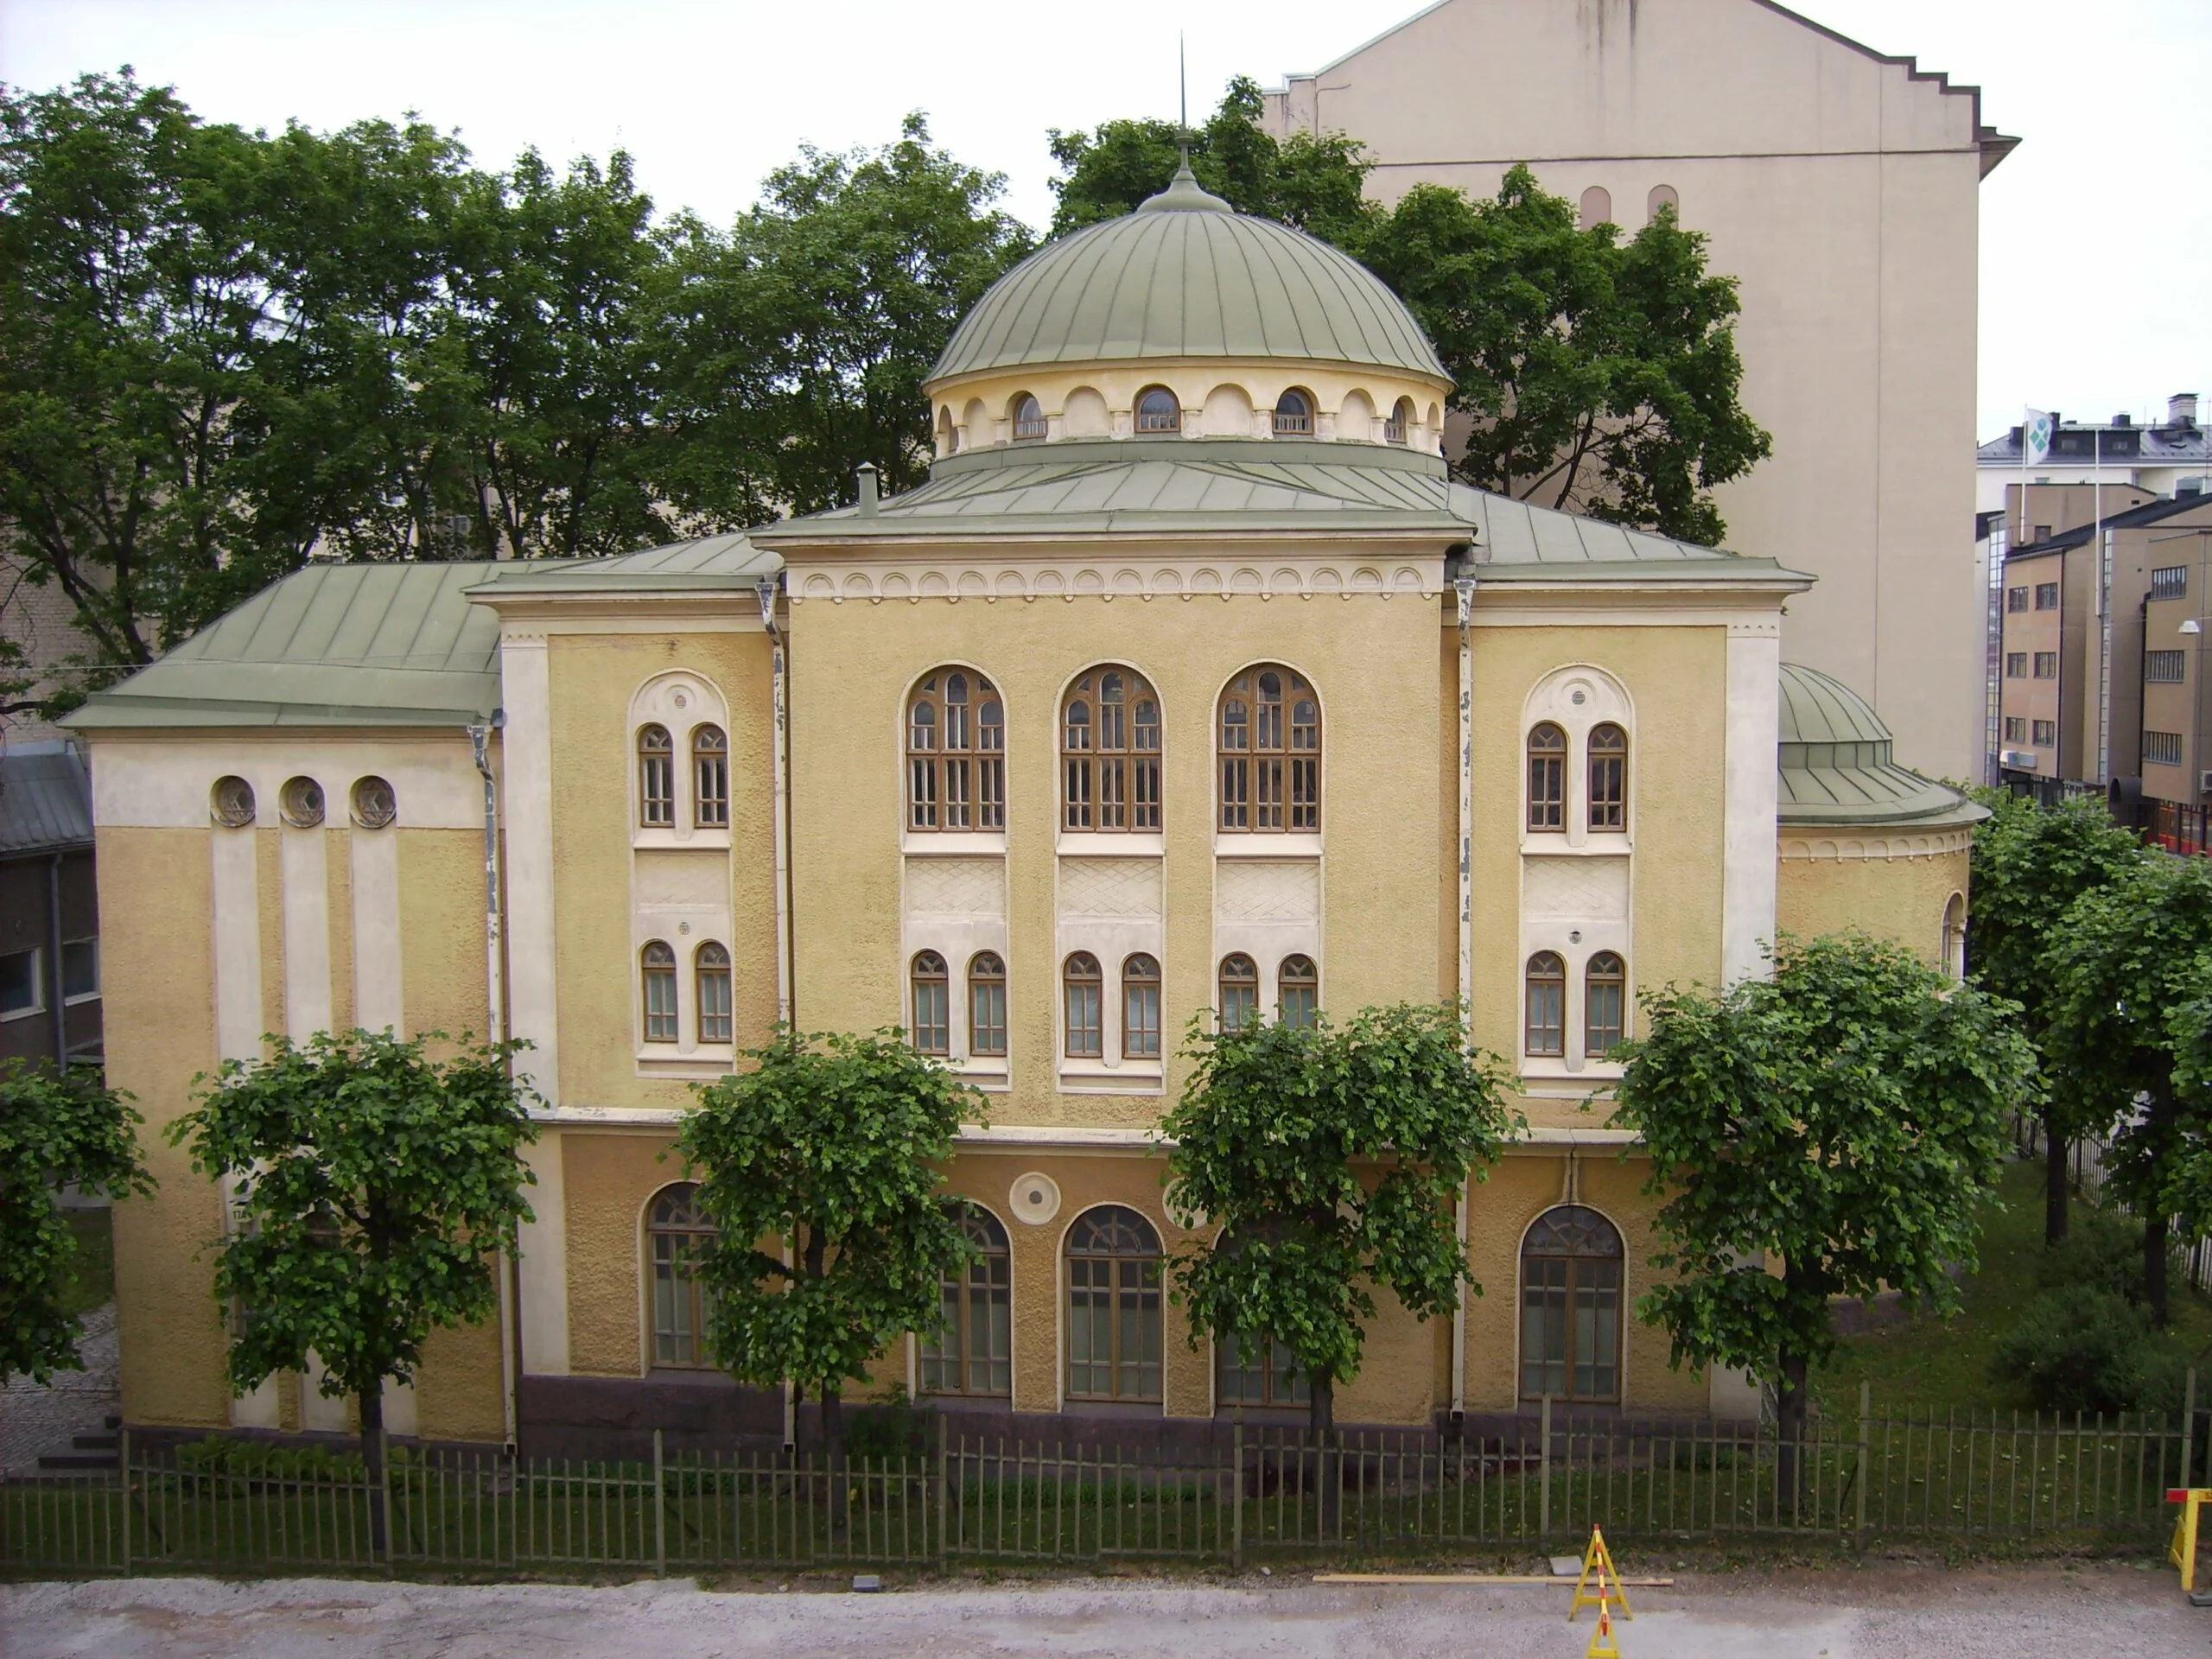 בית הכנסת בטורקוThe Jewish Synagogue in Turku, Finland.